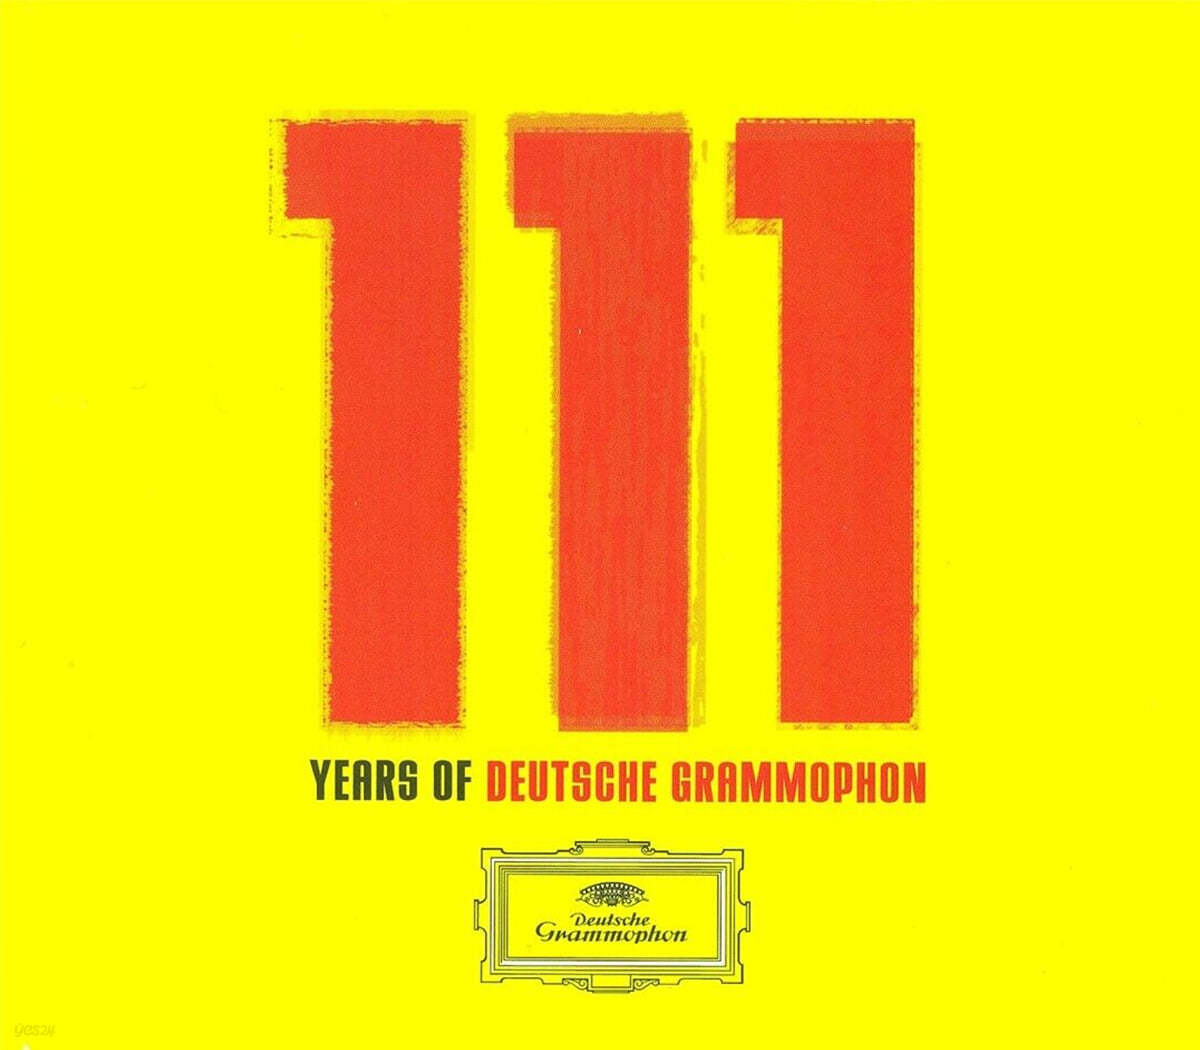 도이치 그라모폰 111주년 기념반 (111 Years of Deutsche Grammophon)